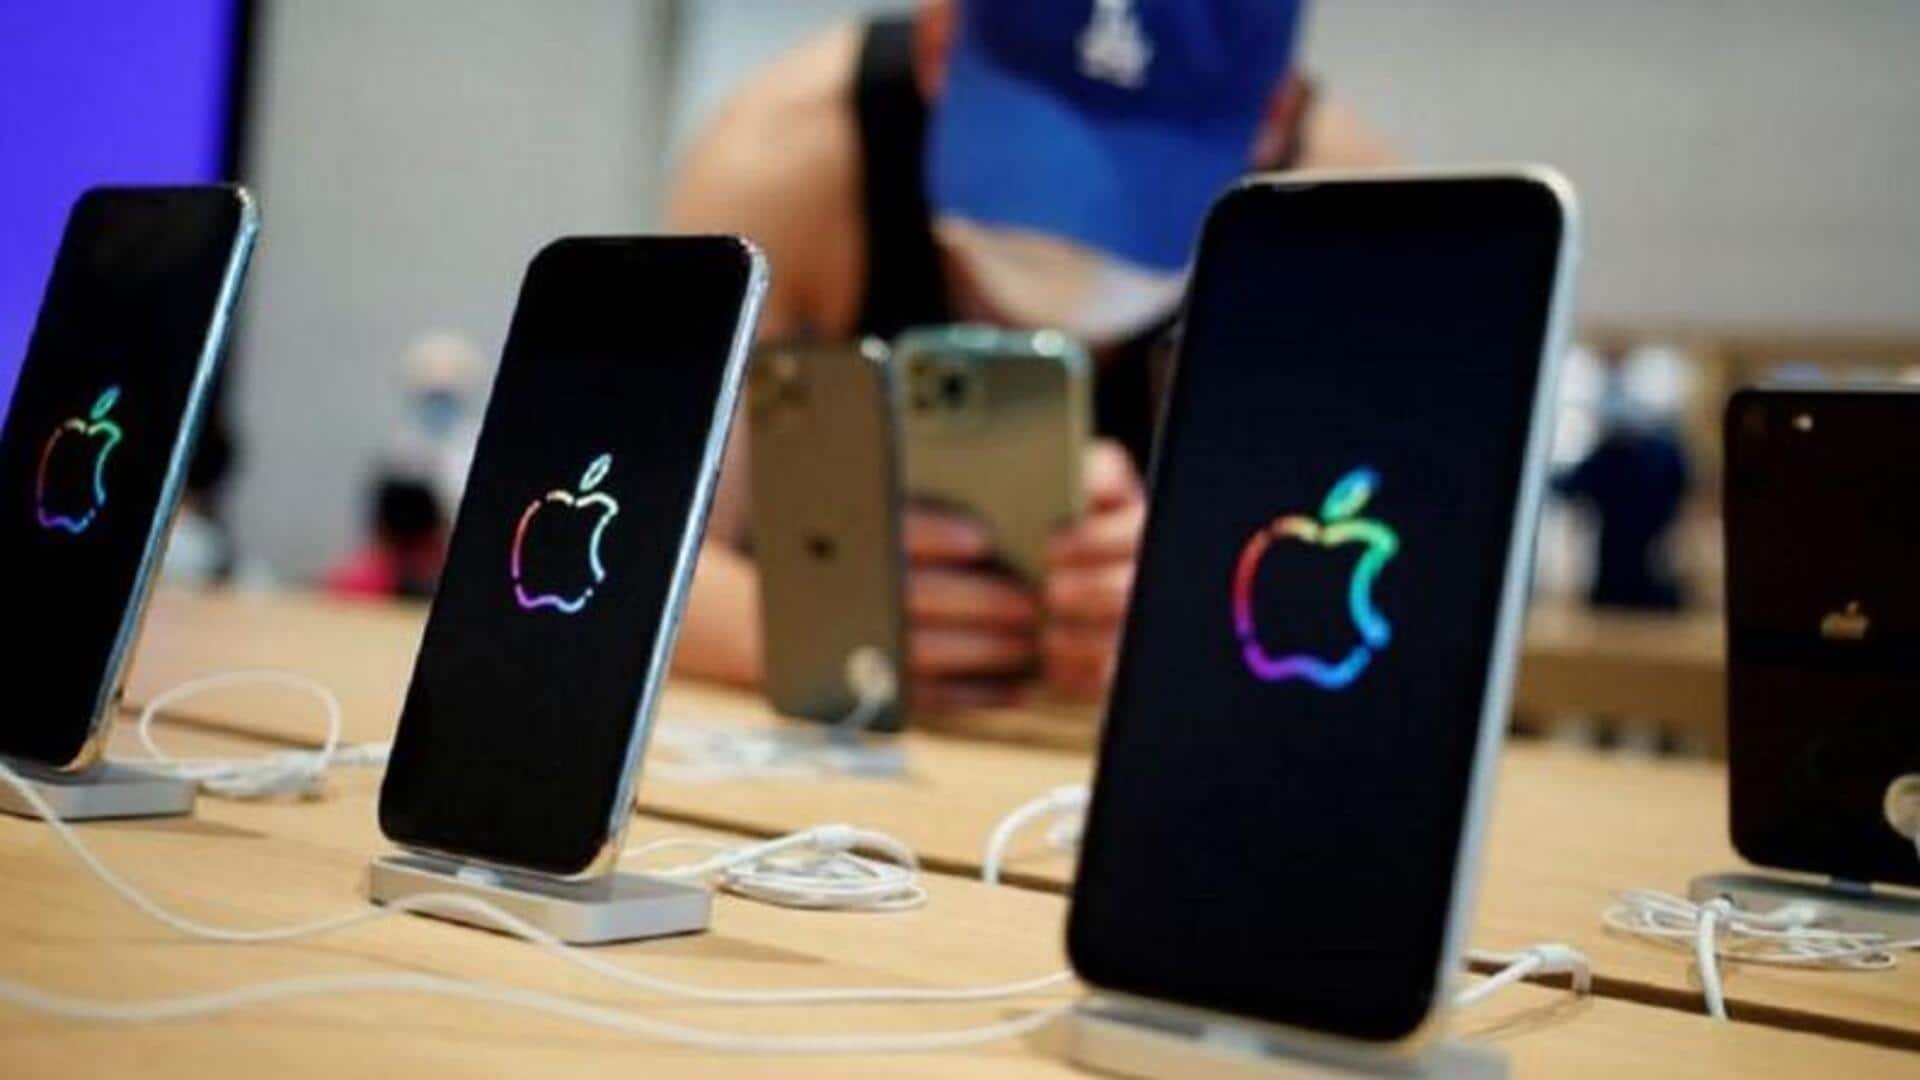 France bans iPhone 12 sales over high radiation concerns